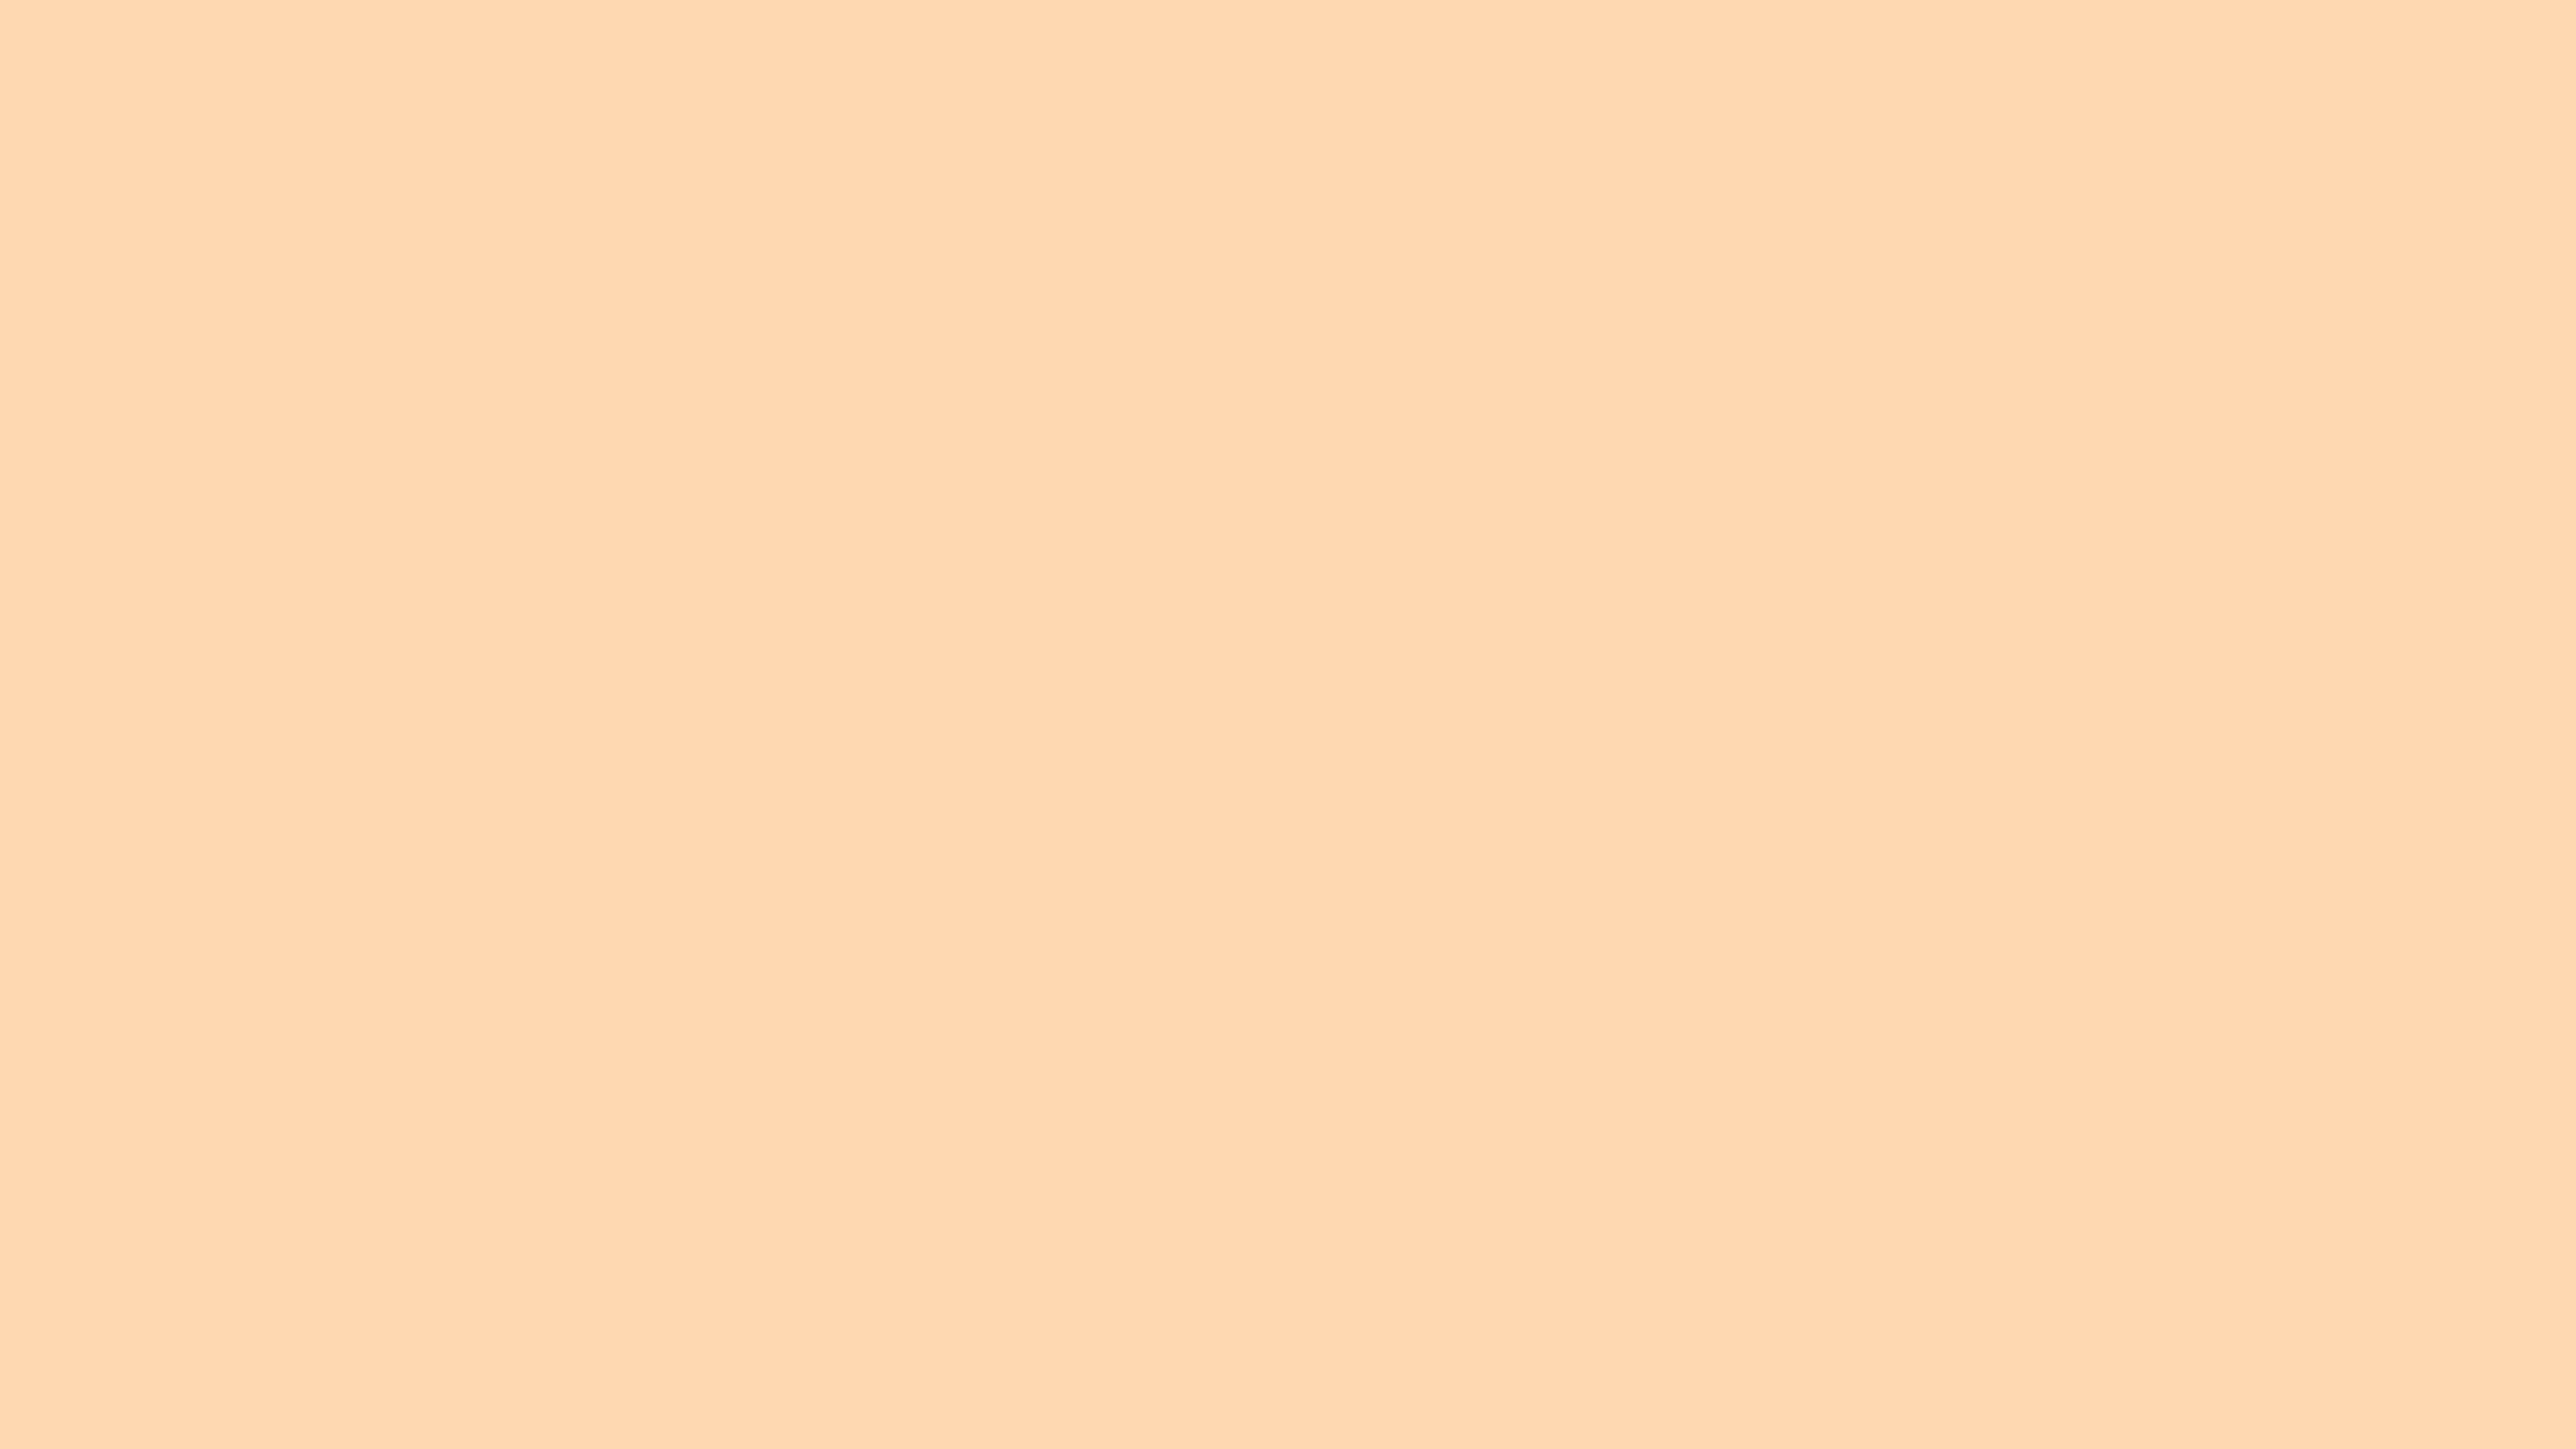 Light Orange Solid Color Background Image | Free Image Generator